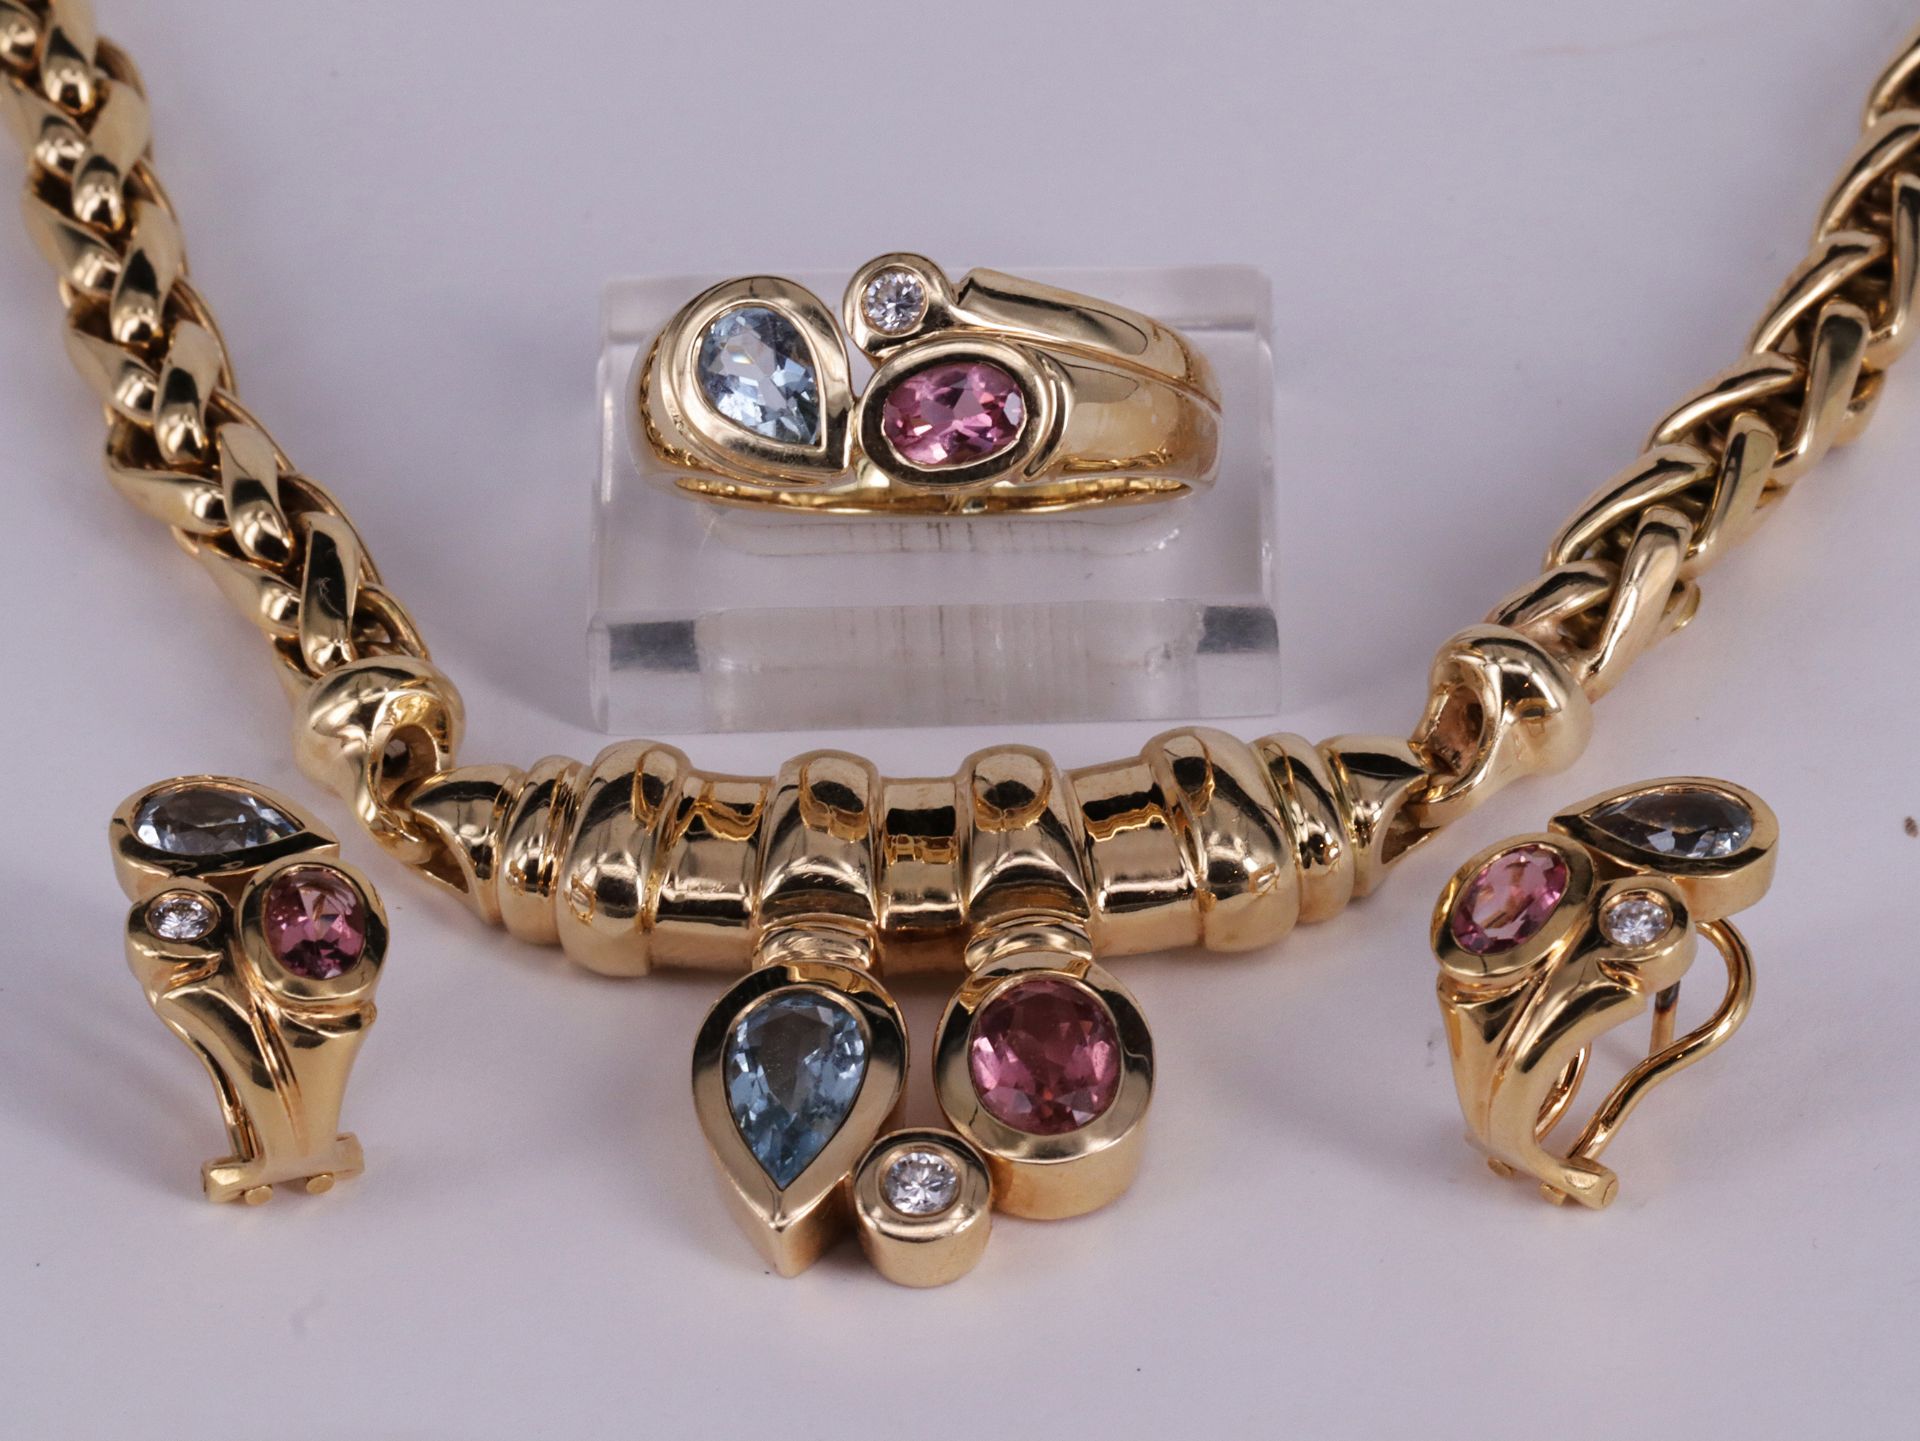 Schmuckset, 585er GG, bestehend aus: Collier, Ring, Paar Ohrringe. Jeweils mit tropfenförmigem